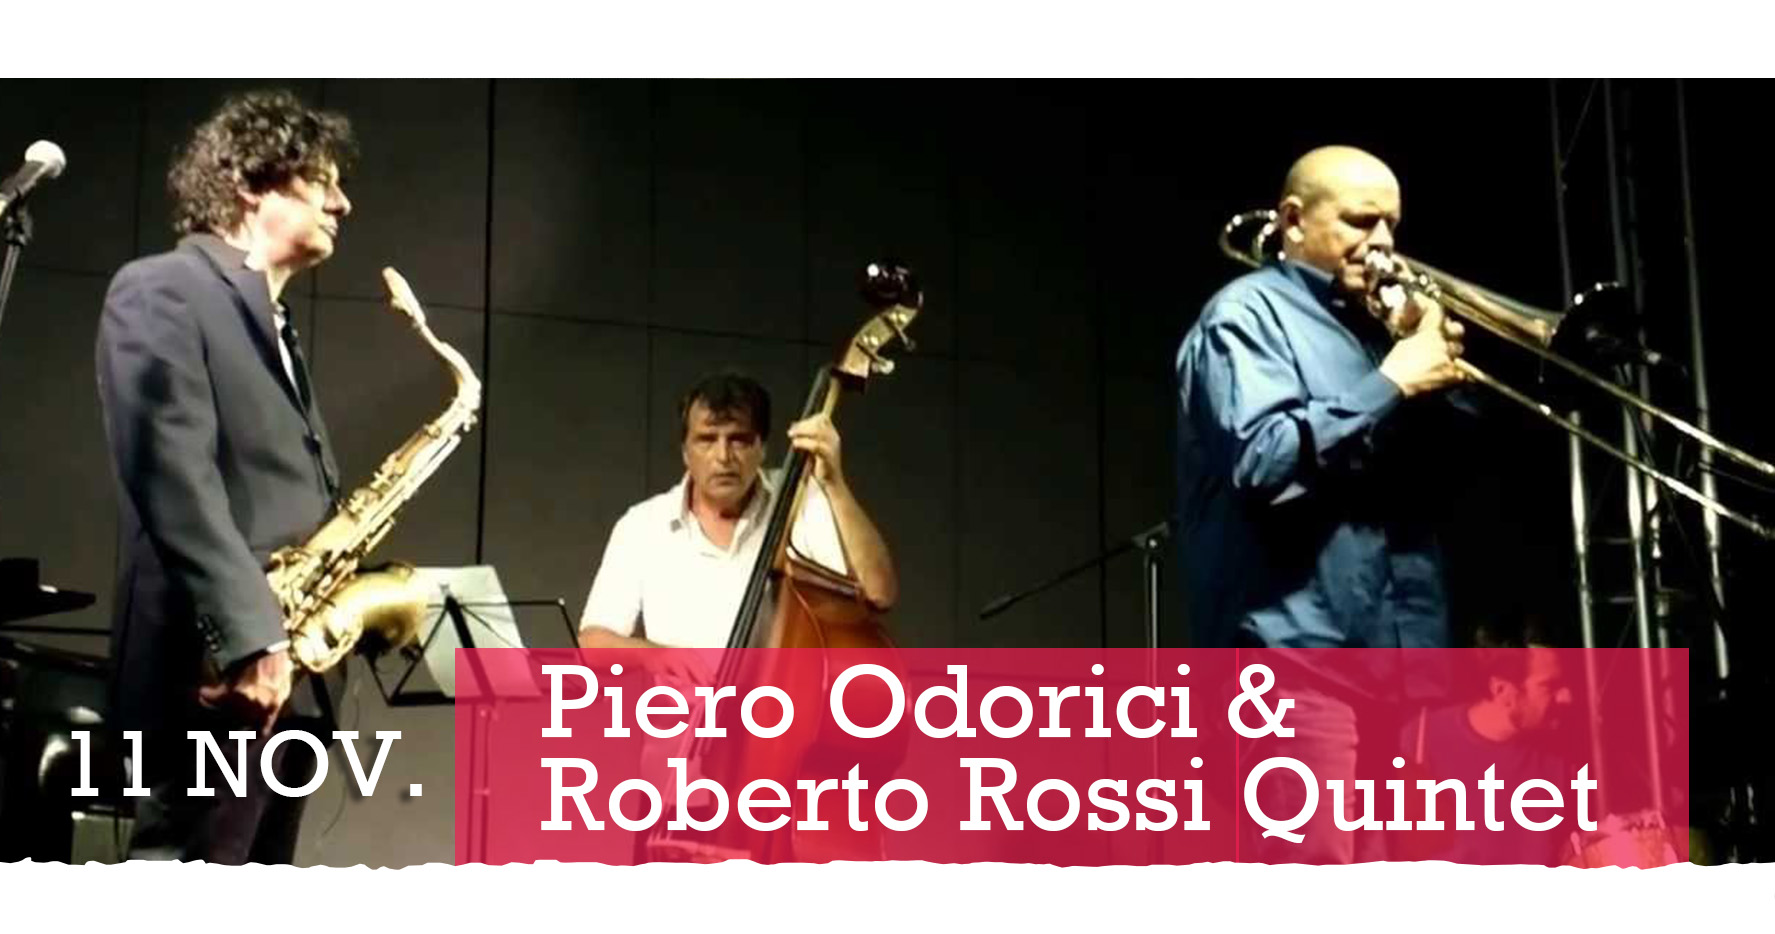 Piero Odorici & Roberto Rossi Quintet